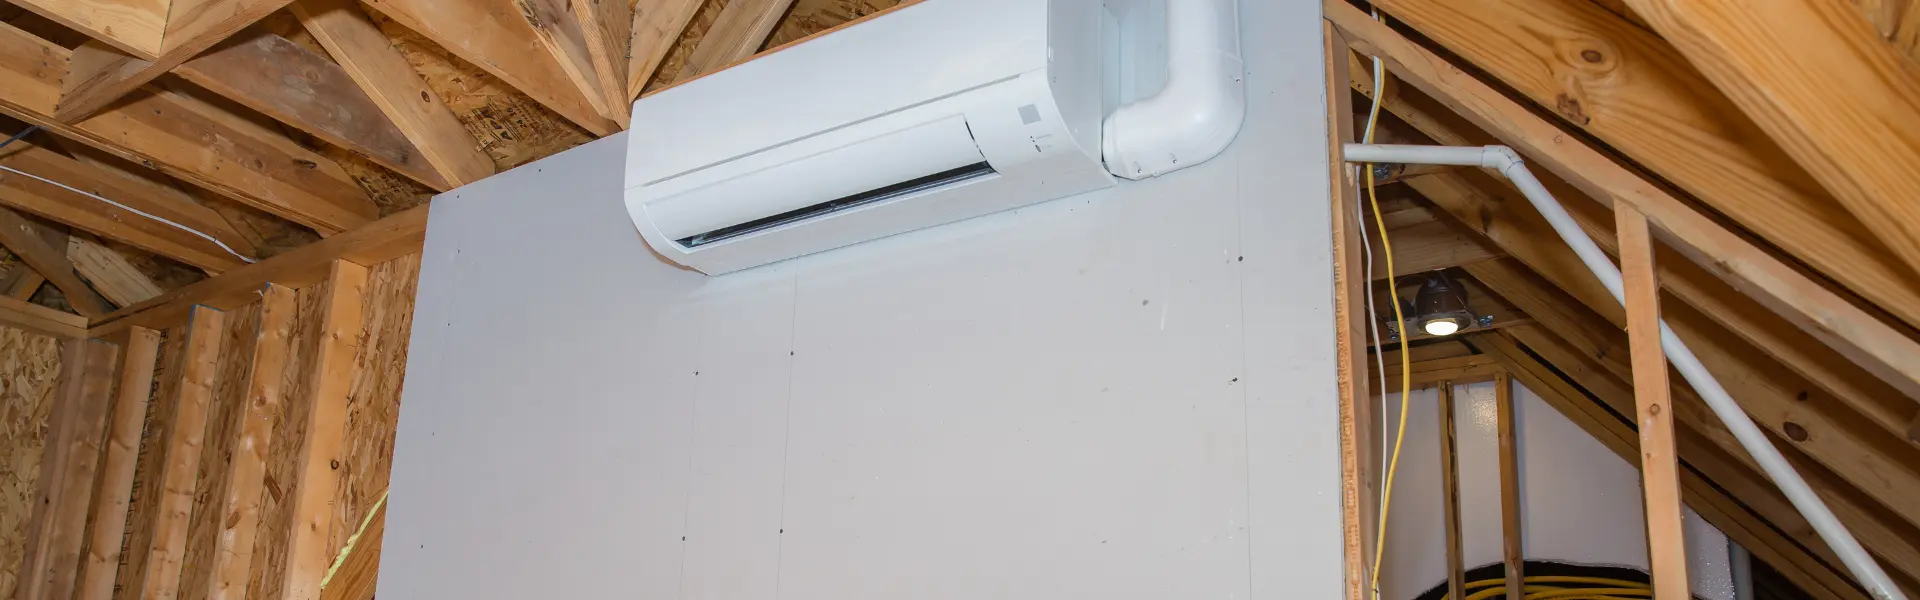 Mini Splits Vs. Window Air Conditioners